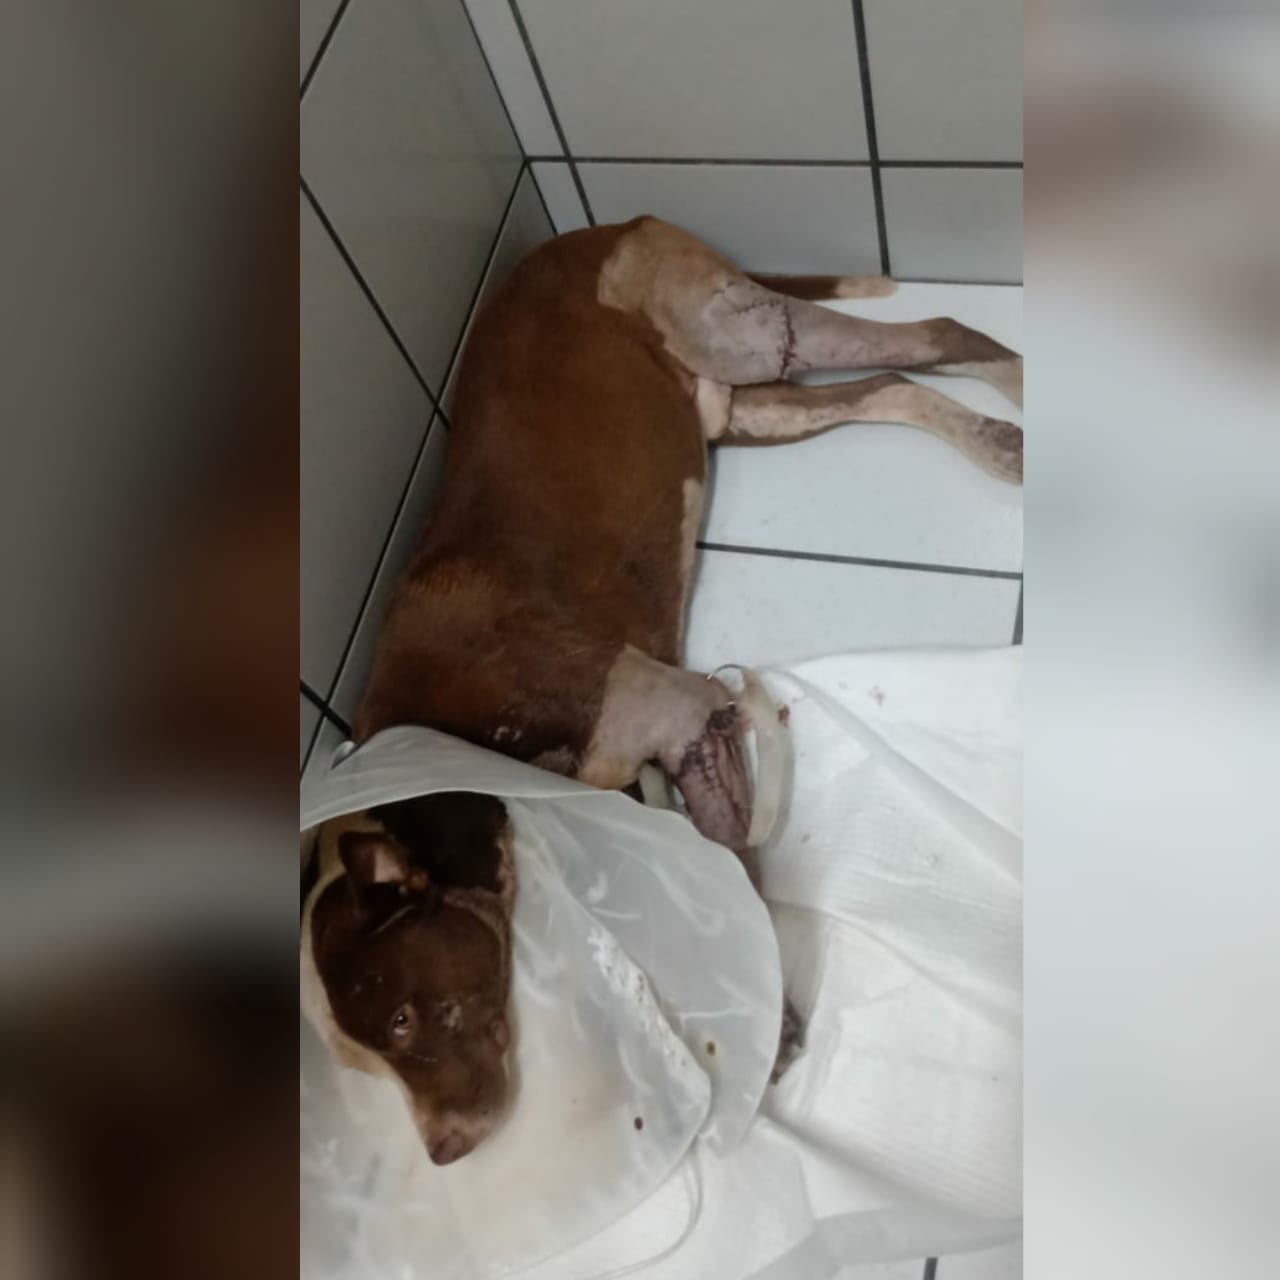 Uma mulher de 32 anos denunciou que o cão dela teve as pernas cortadas por um vizinho, em Senador Canedo. (Foto: arquivo pessoal)